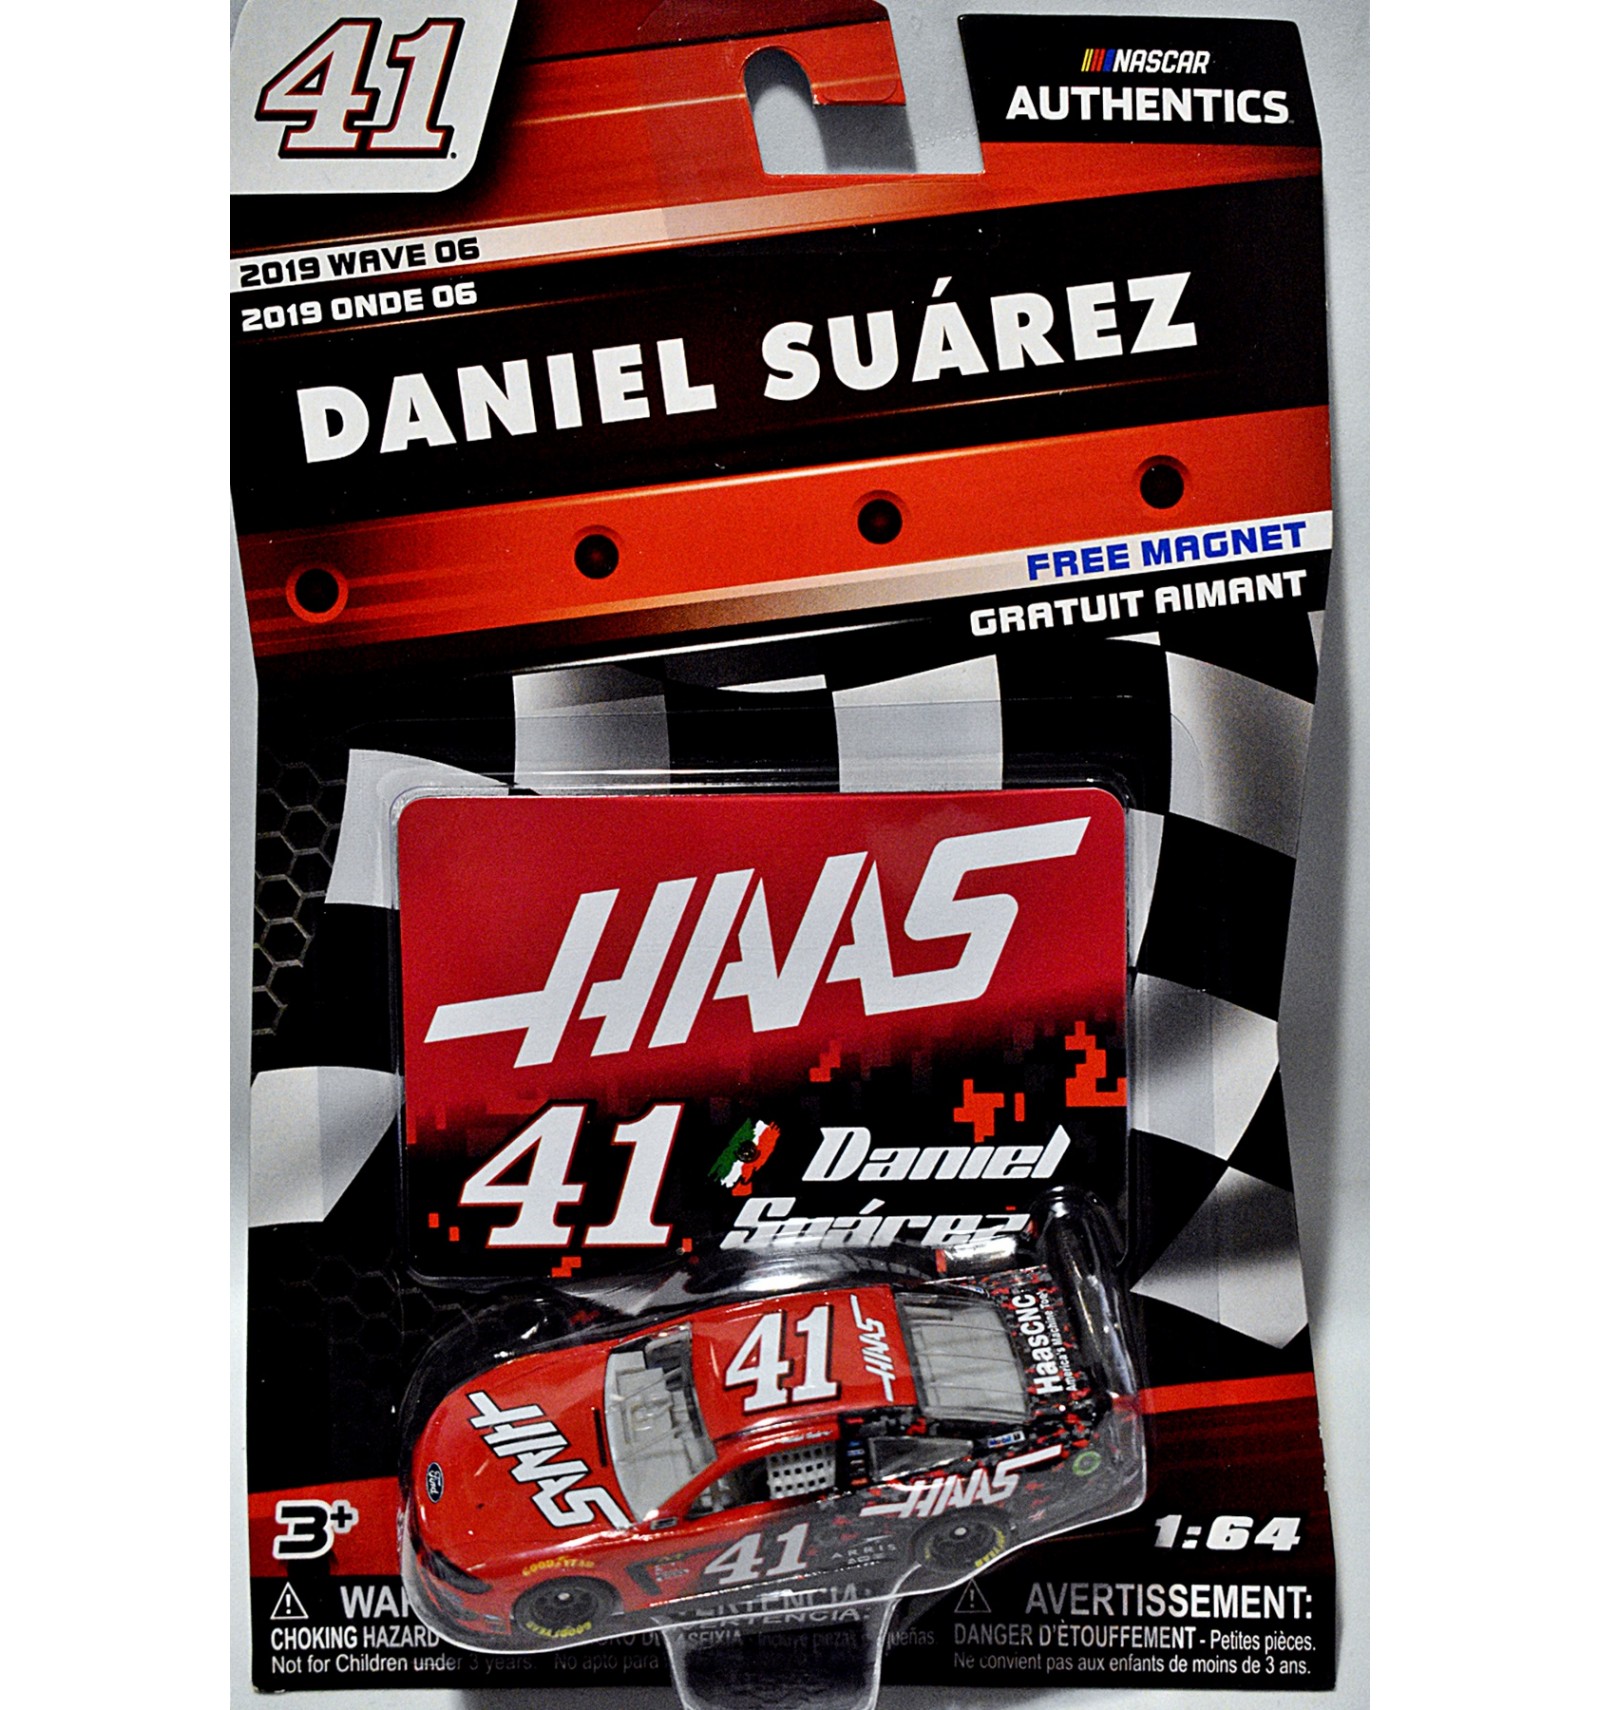 2019 #41 Daniel Suarez Haas Automation 1/87 NASCAR Authentics Diecast Loose 